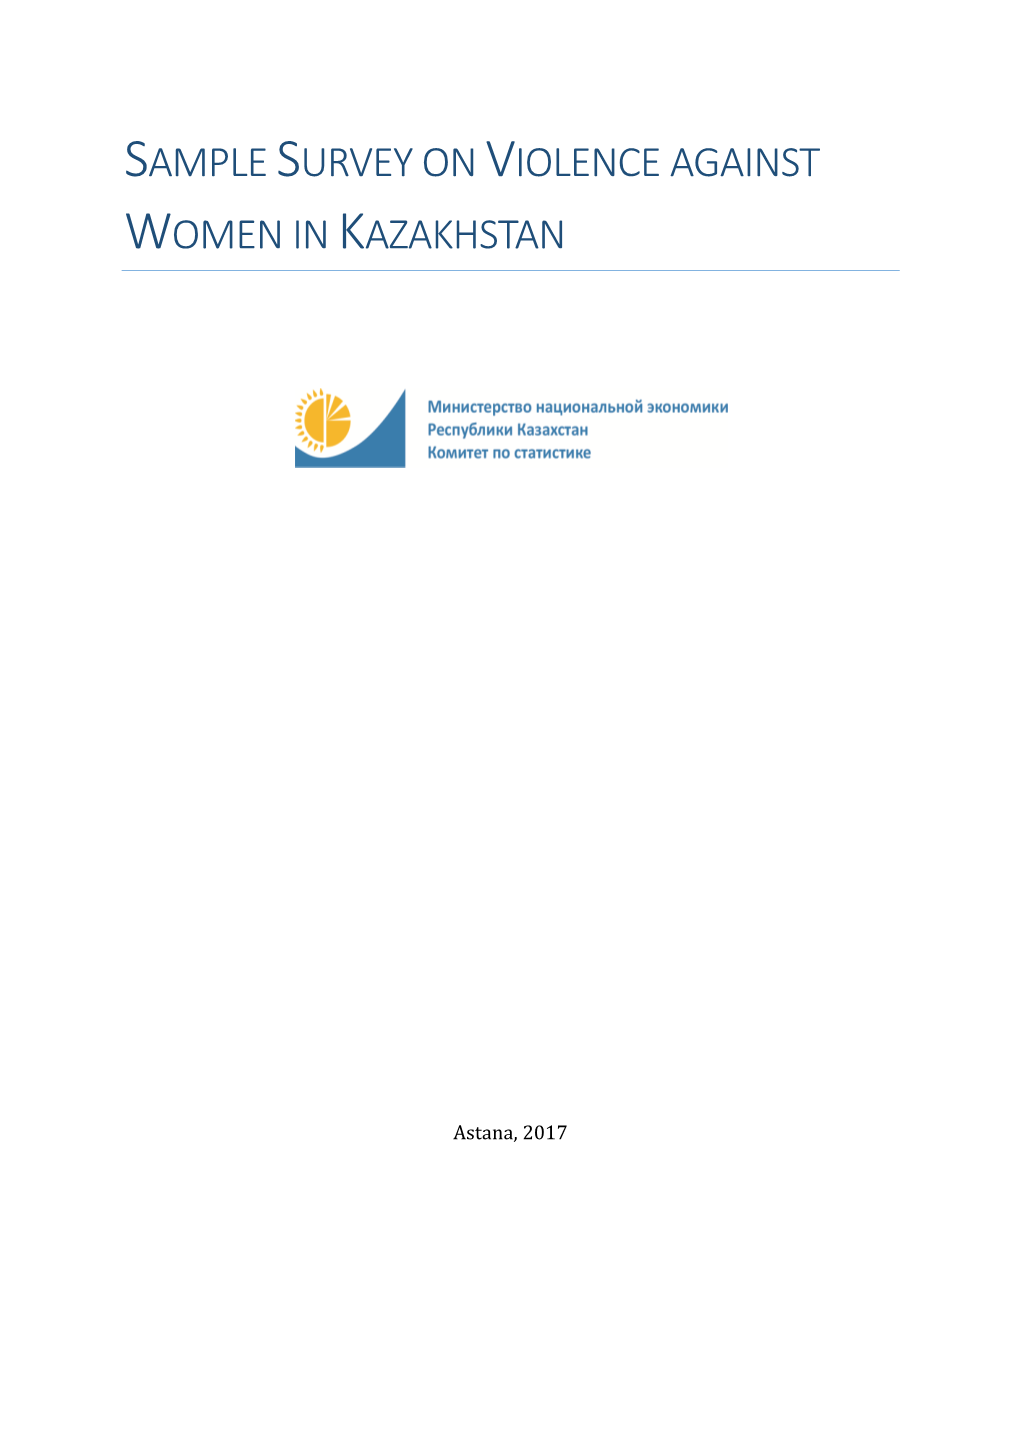 Sample Survey on Violence Against Women in Kazakhstan